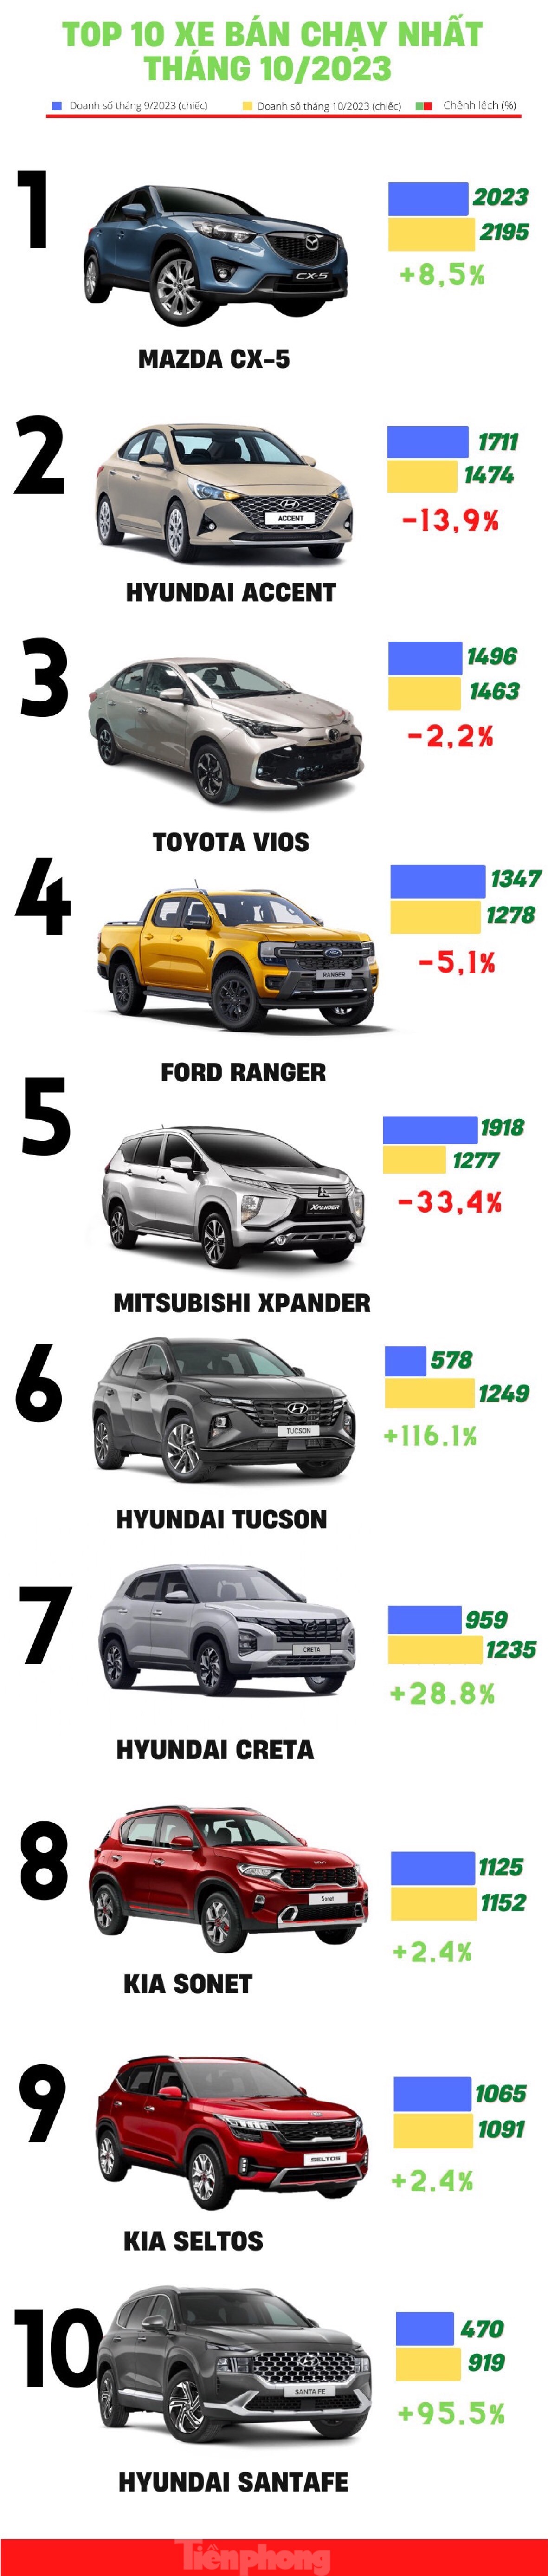 Top 10 ô tô bán chạy nhất tháng 10 tại Việt Nam ảnh 1